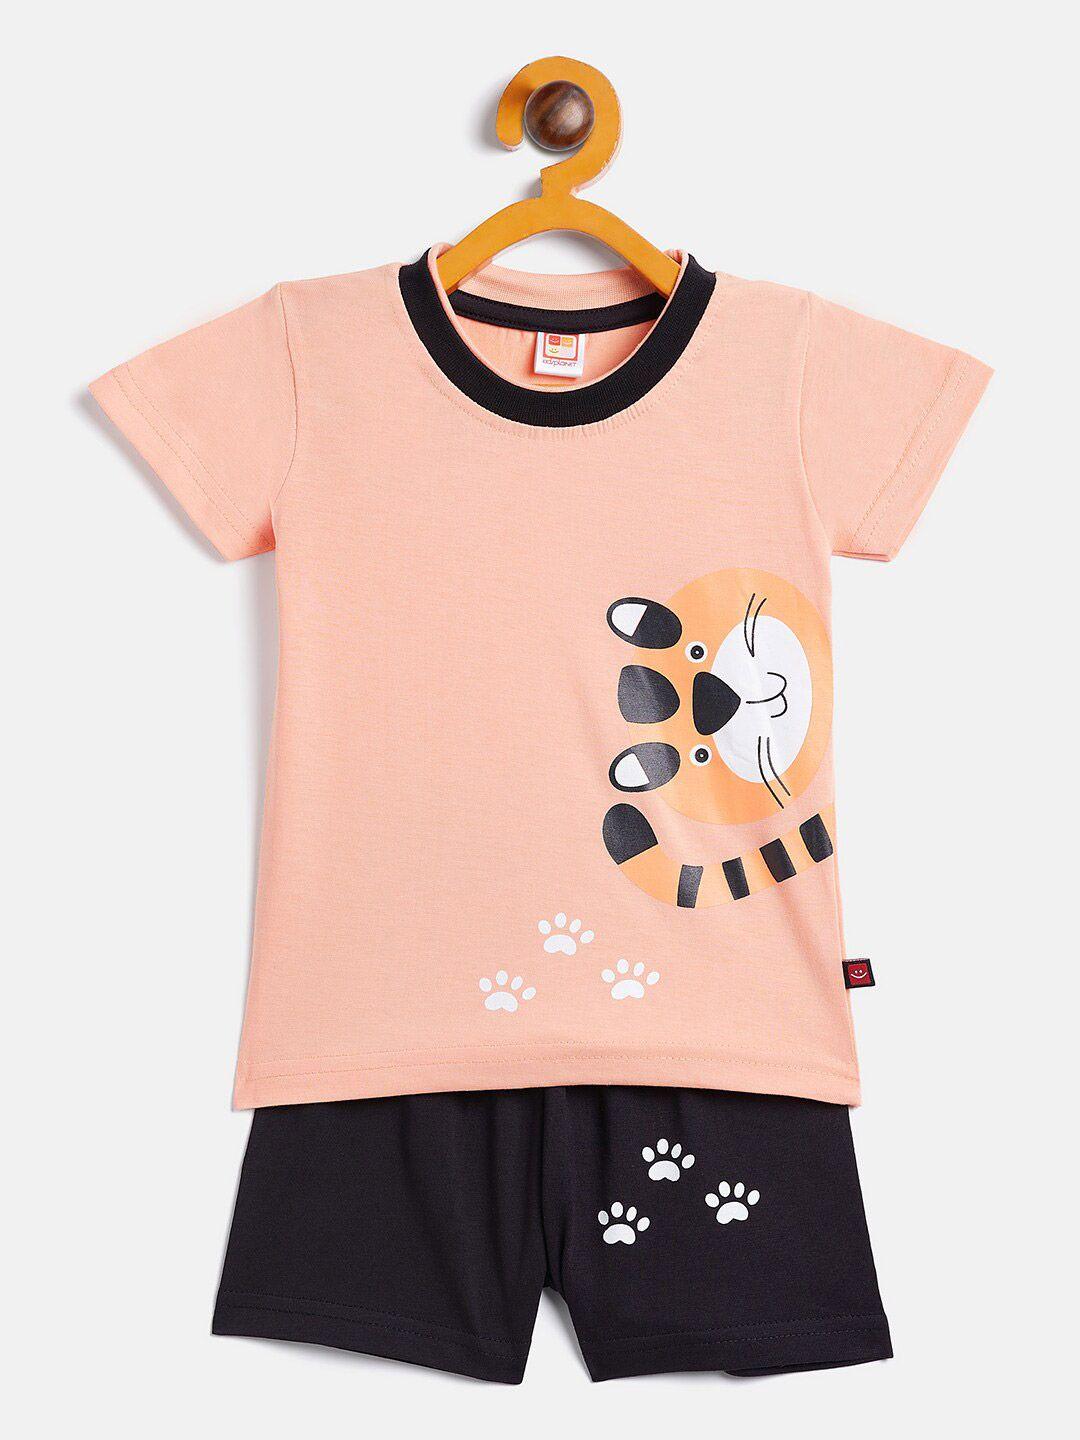 camey-unisex-kids-orange-&-black-printed-t-shirt-with-shorts